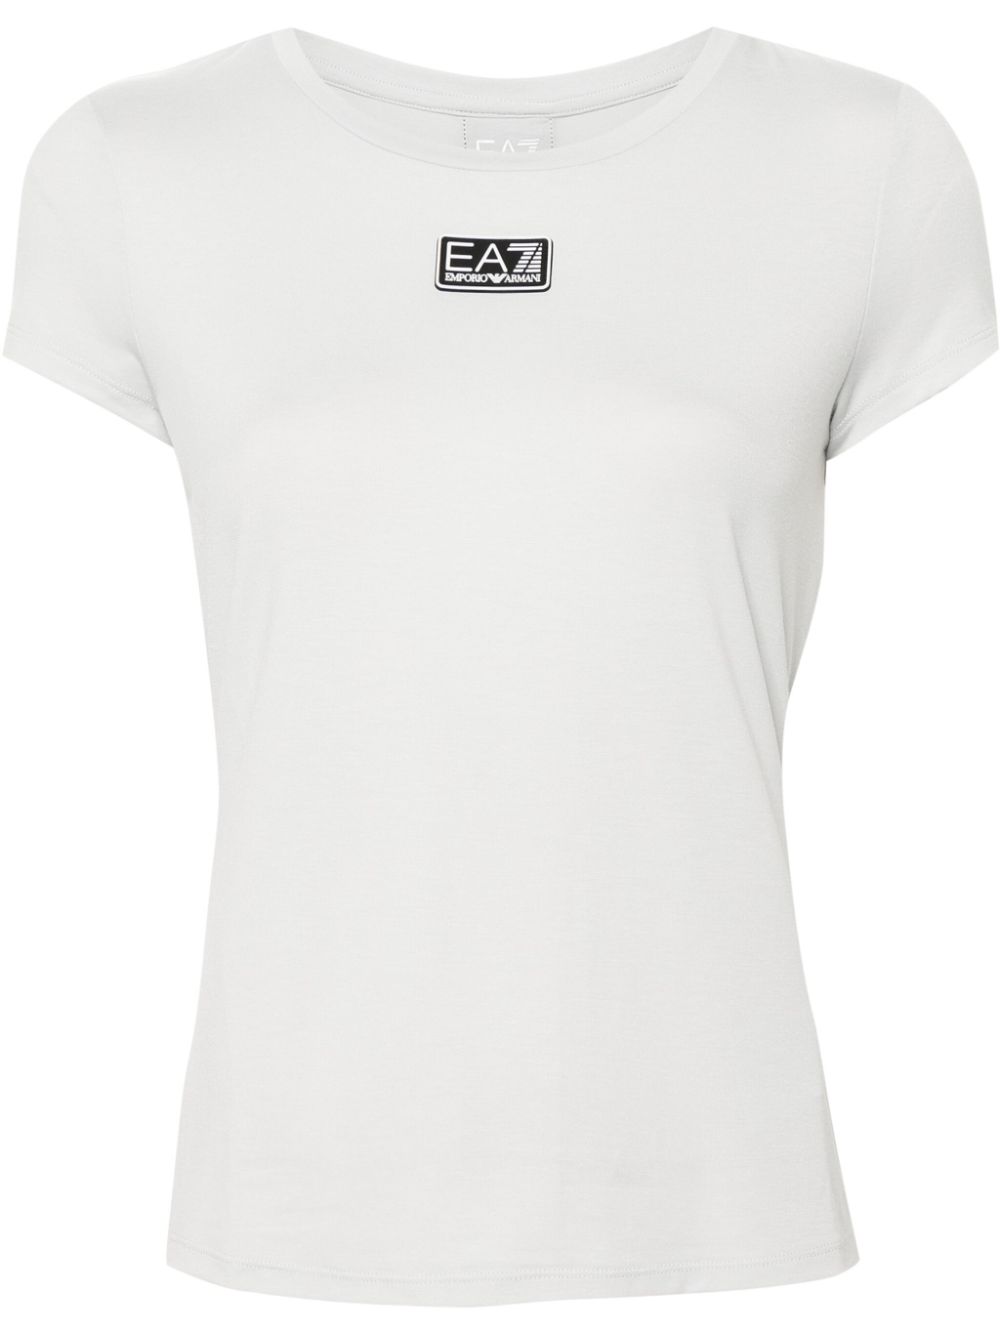 EA7 EA7- Logo T-shirt